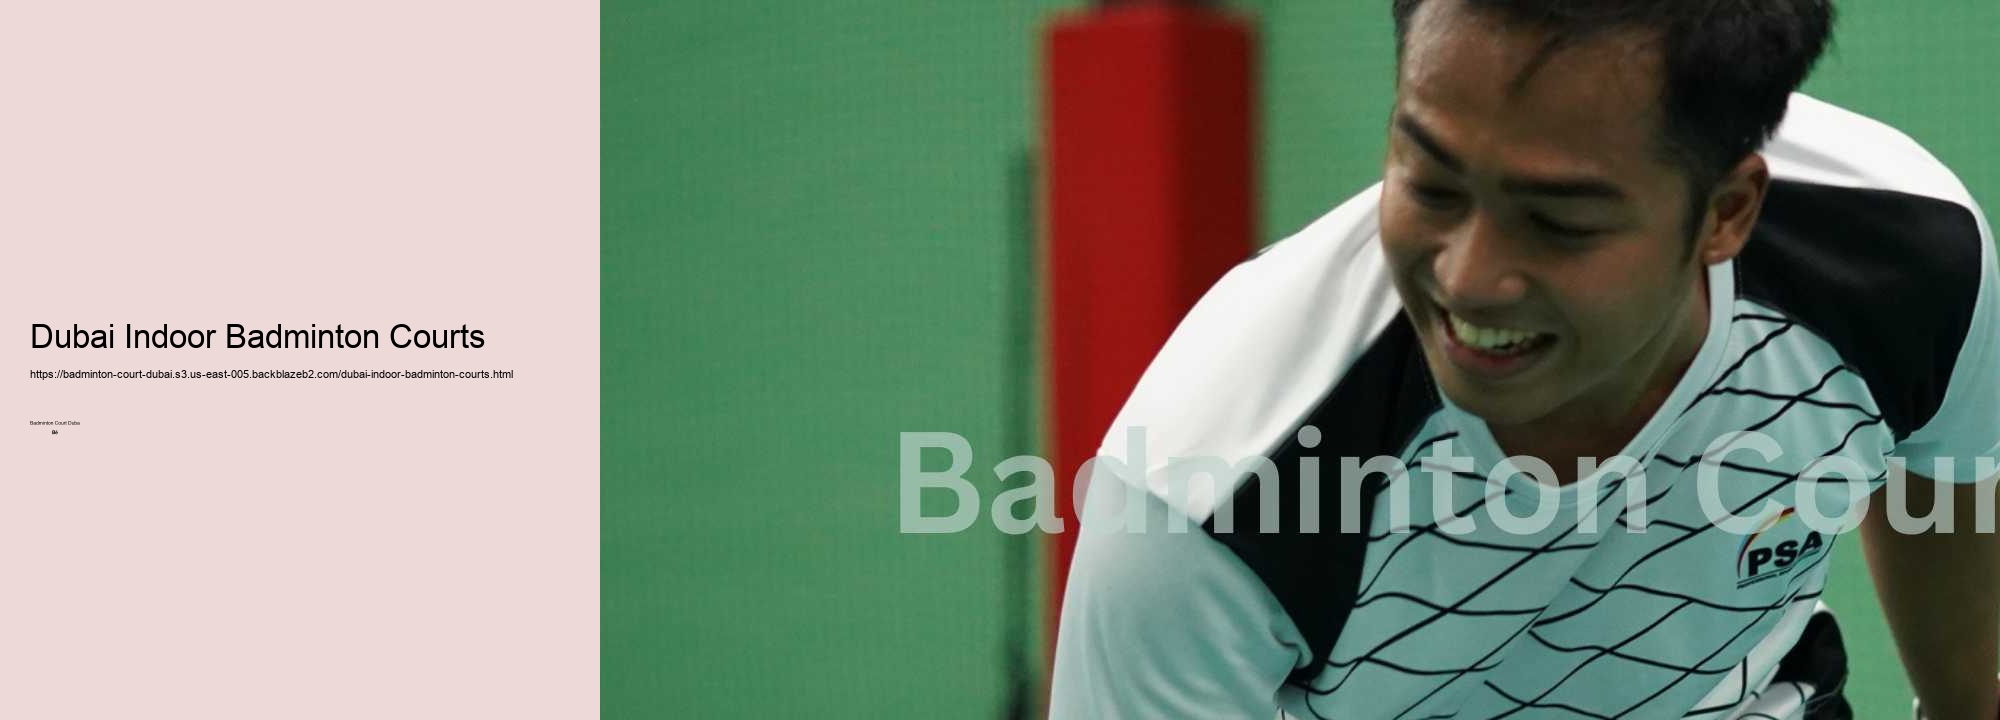 Dubai Indoor Badminton Courts